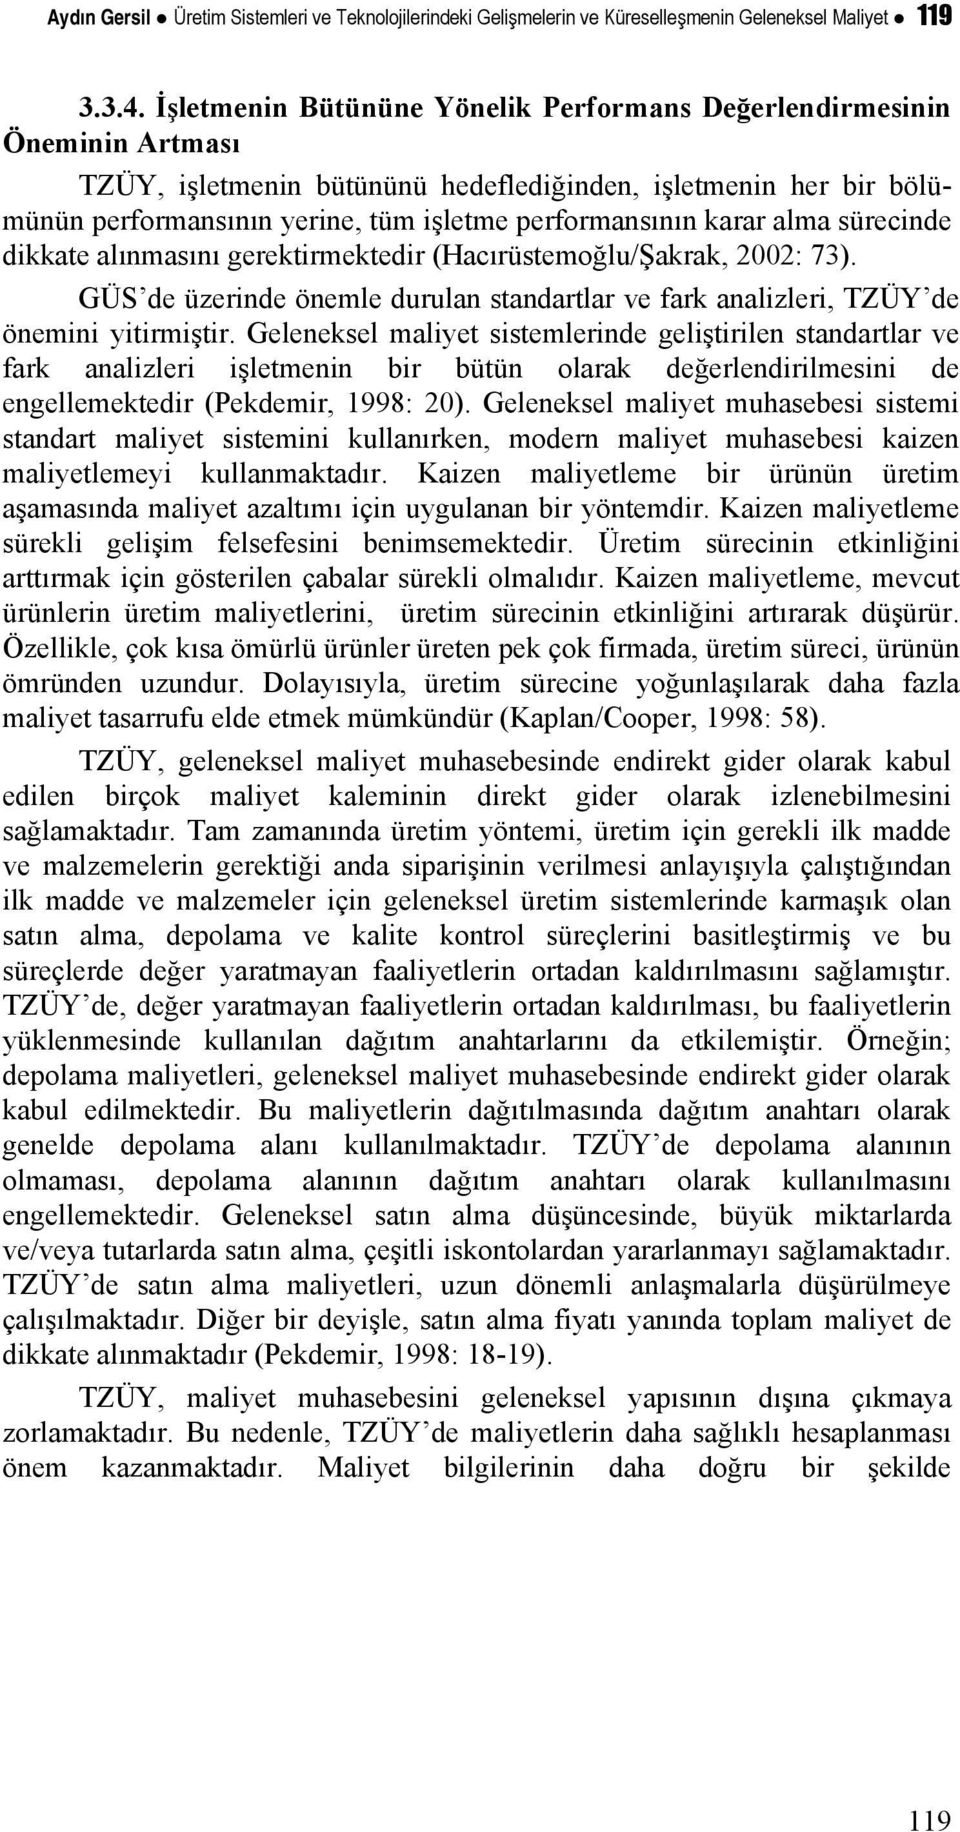 karar alma sürecinde dikkate alınmasını gerektirmektedir (Hacırüstemoğlu/Şakrak, 2002: 73). GÜS de üzerinde önemle durulan standartlar ve fark analizleri, TZÜY de önemini yitirmiştir.